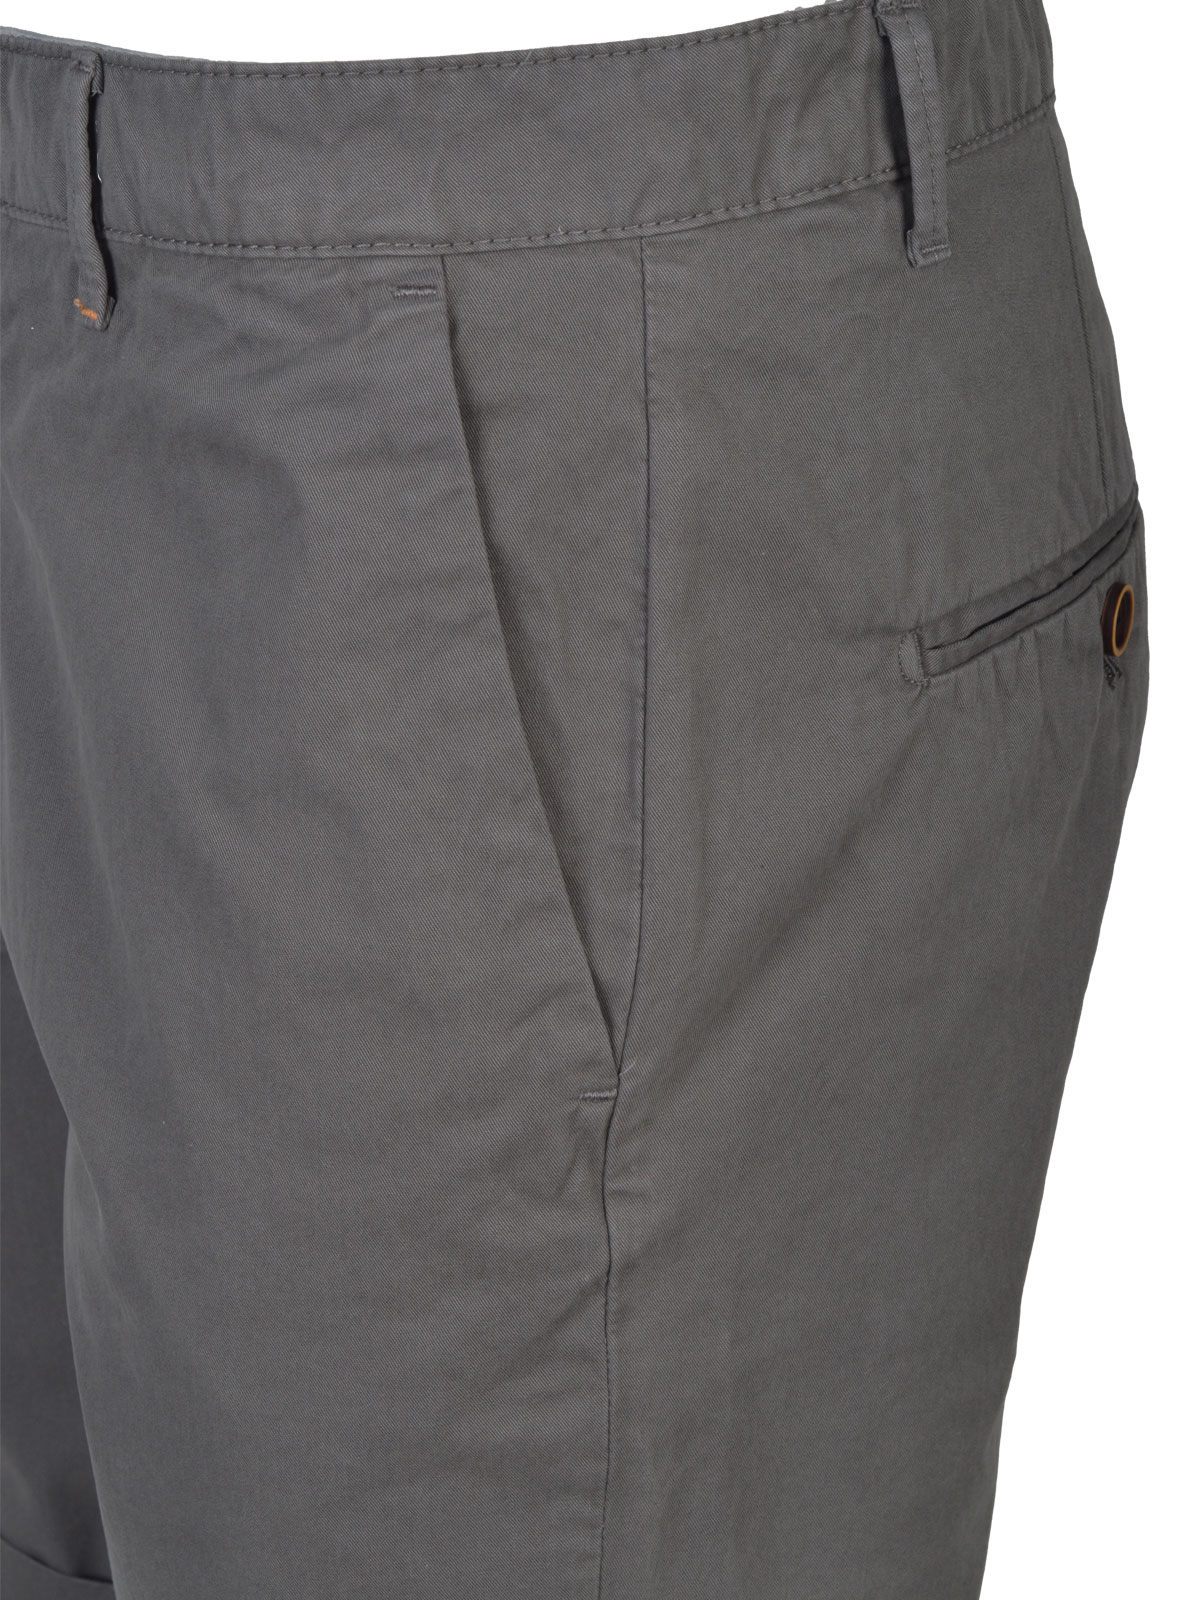  pantaloni scurți din bumbac gri  - 67070 € 38.24 img2